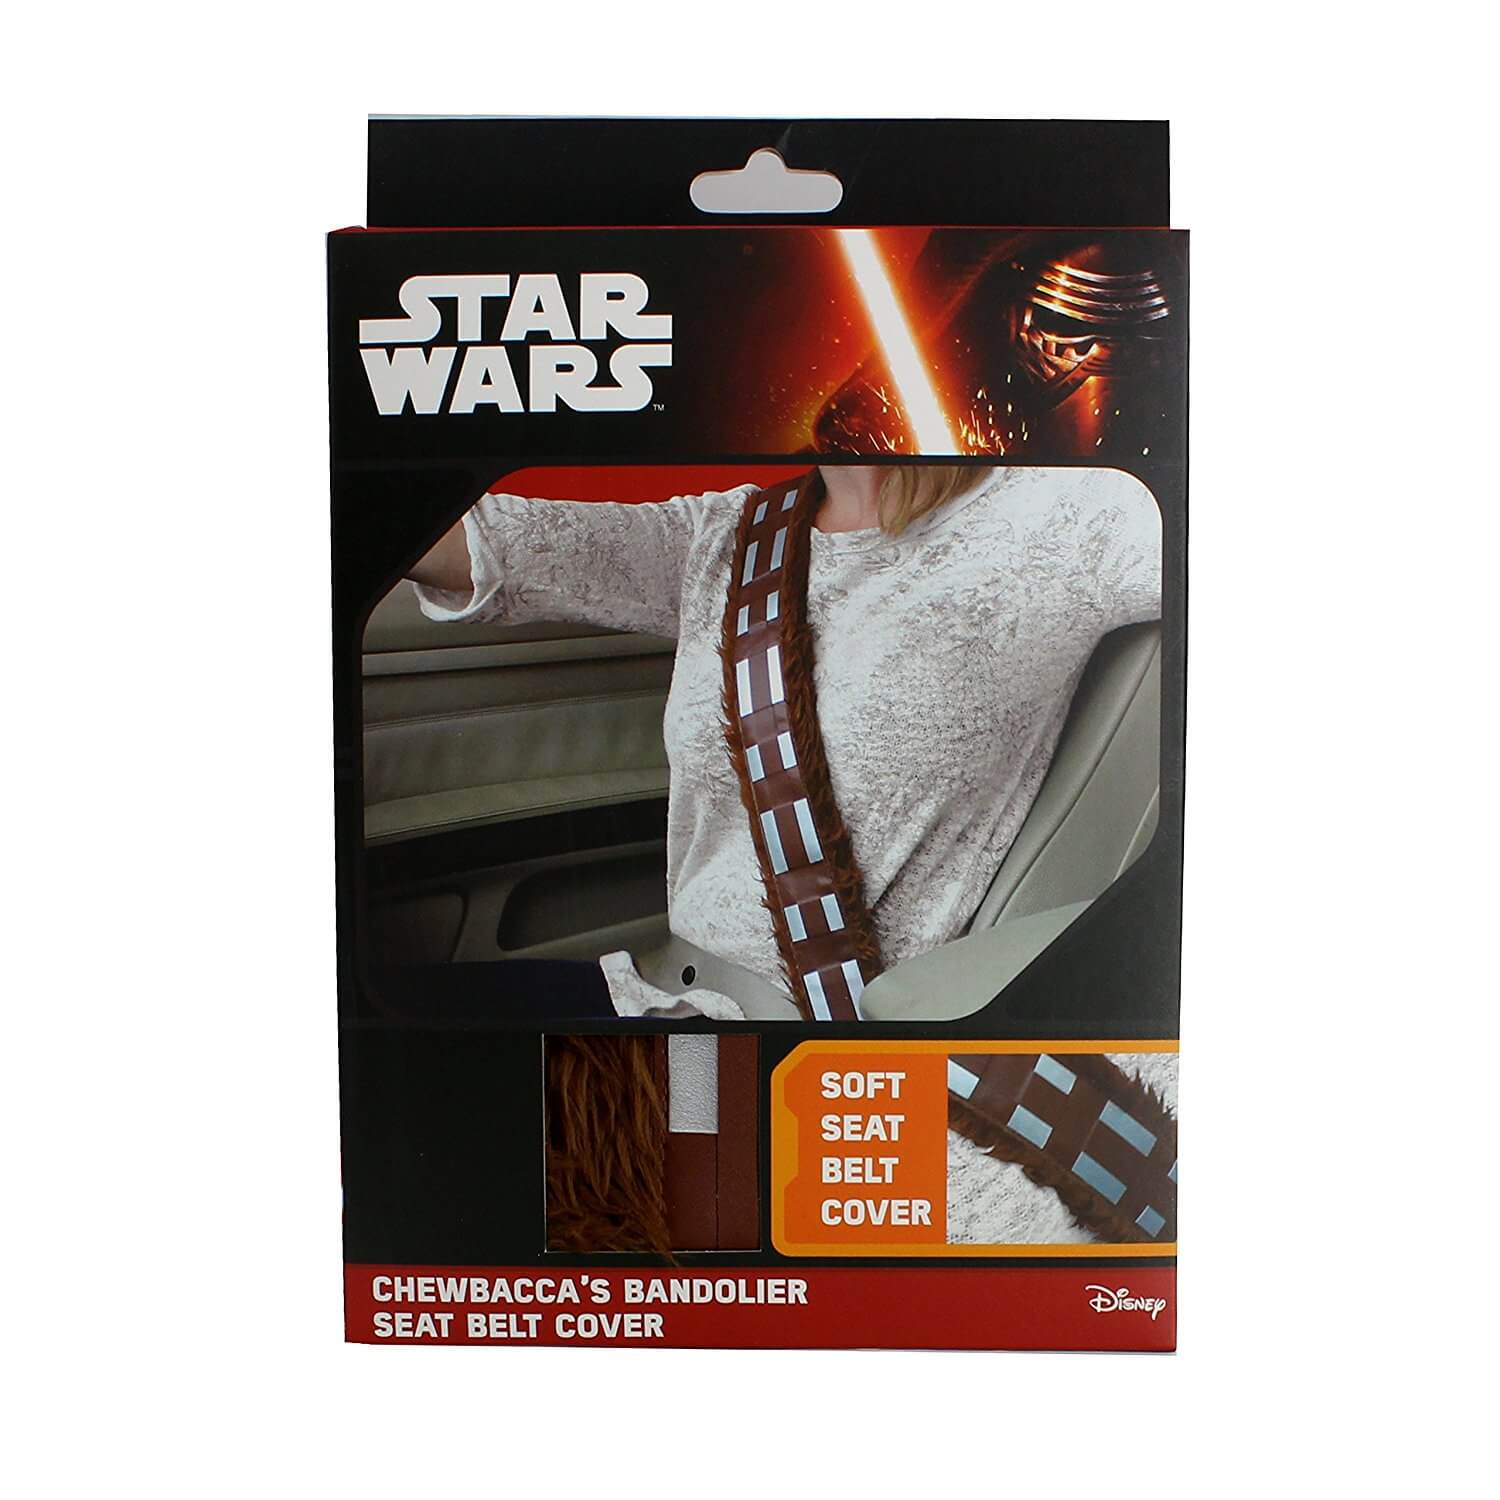 Star Wars Gurtpolster im Chewbacca Design Sicherheitsgurtpolster für Kinder und Erwachsene Nerdgeschenk